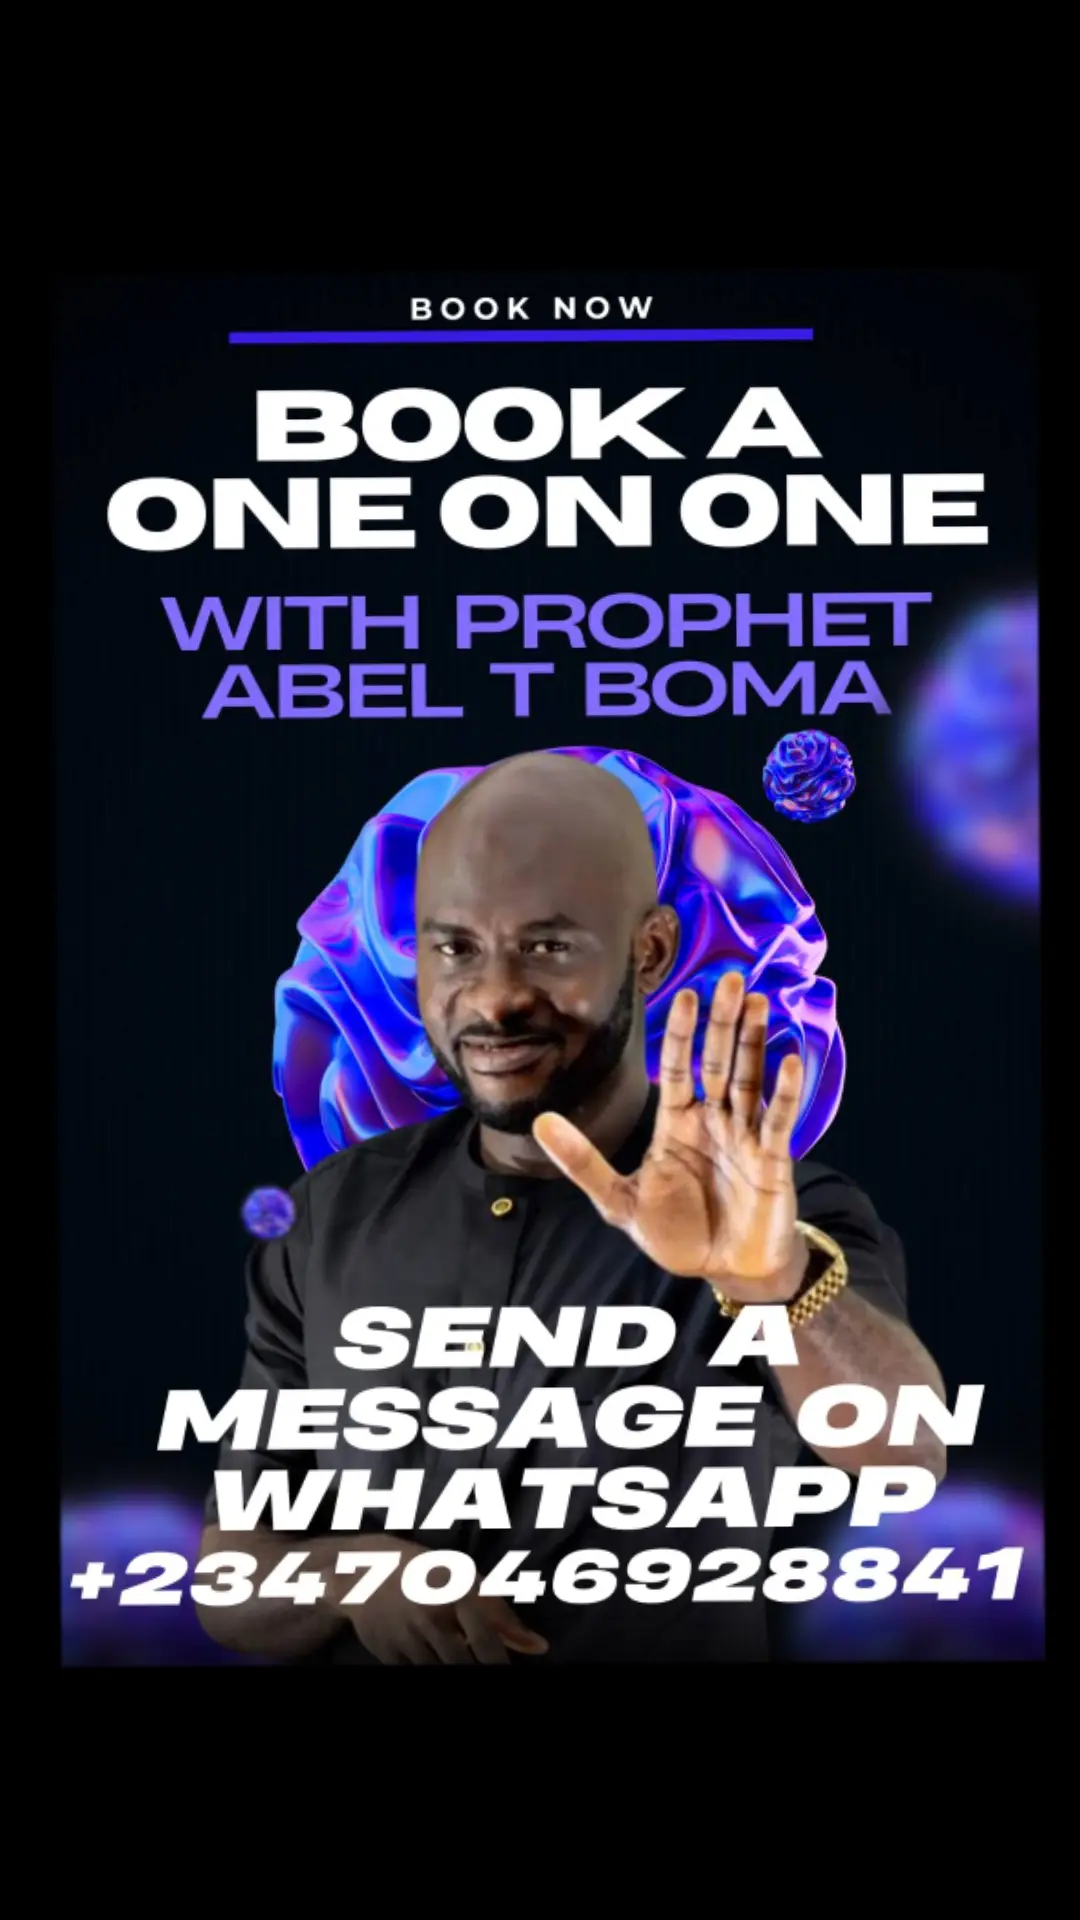 God is speaking #prophetATb #prophetabeltboma #abeltboma #Abelboma #Prophetatb  #fyp #foryopu #foryoupage #foryourpage #Church #Churchtiktok #Tiktokchurch #2024resolution #God #GodLovesyou #Godbless #Prophet #prophetic #Propheticdeclaration #Propheticdreams #Propheticword #prophecy #prophecyontiktok #prophecyfulfilled #prophecyfyp #fypシ゚viral #fypage #2024prophecy #prophecy2024 #2024 #Trends2024 #2024trends #2024prophecy #2024prophecies #prophecy2024 #2024 #2024years  #Year2024 #propheciesfortheyear2024 #2024trends 